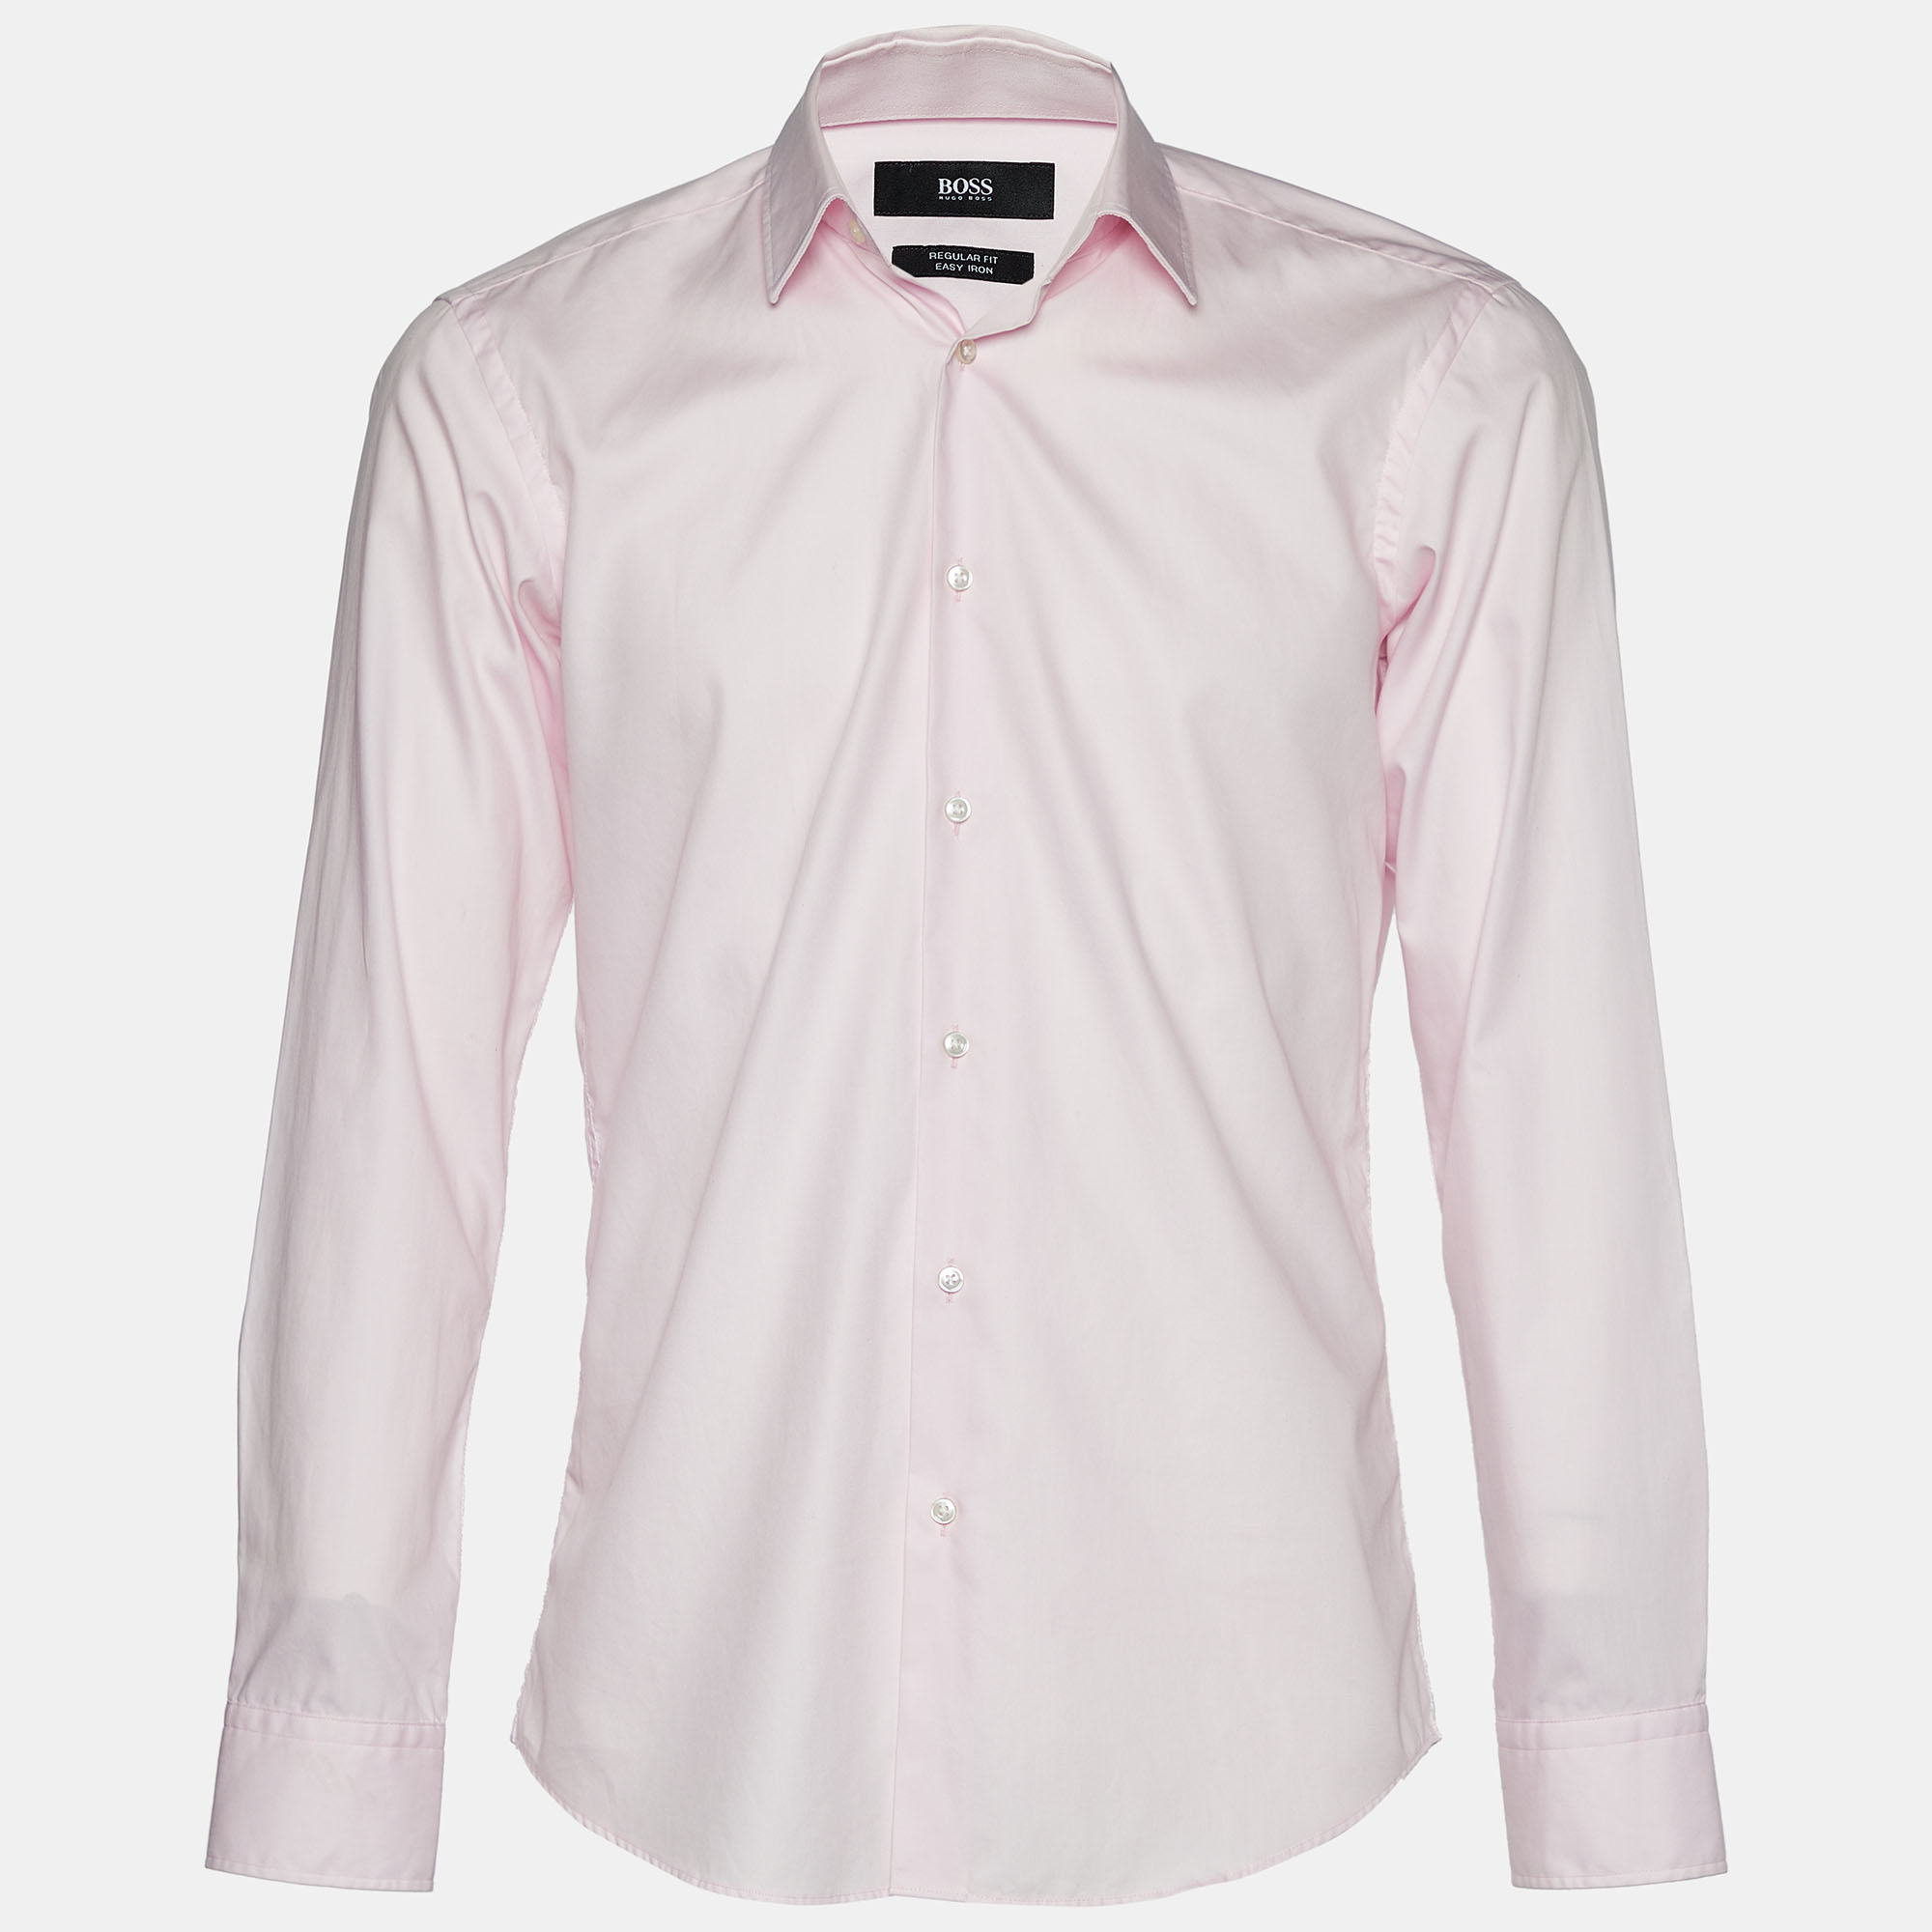 

Boss Hugo Boss Pink Cotton Easy Iron Regular Fit Shirt